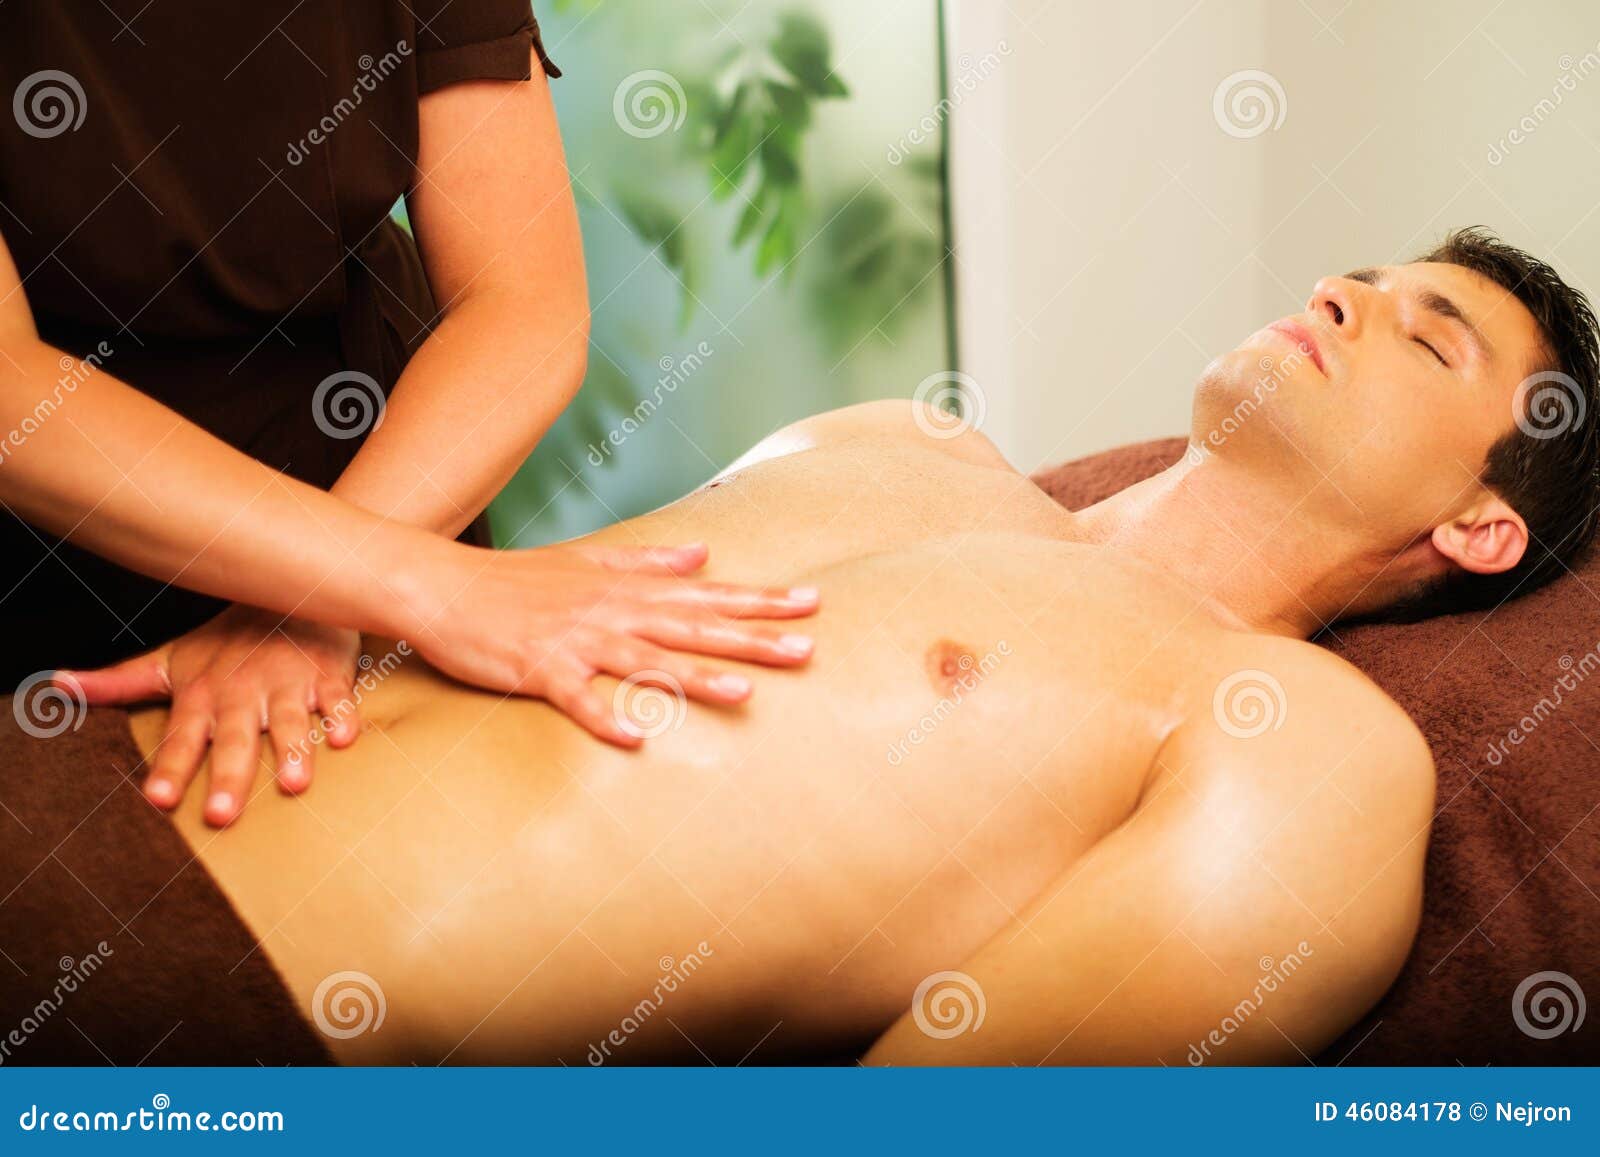 массаж грудью мужчин фото 1